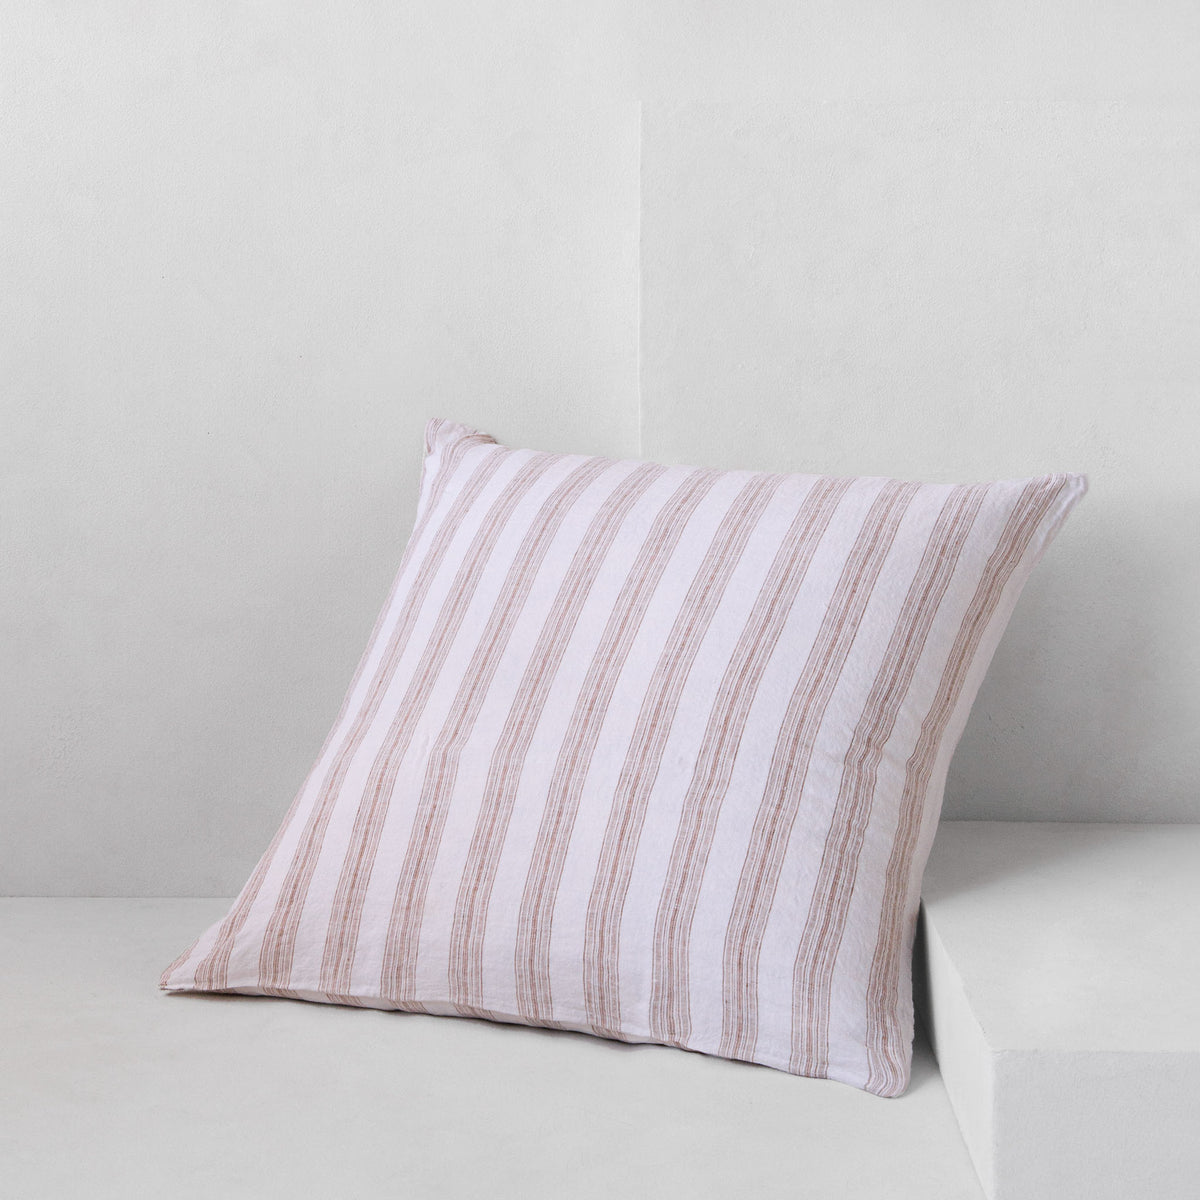 Basix Stripe European Linen Pillowcase - Ayrton/Russo